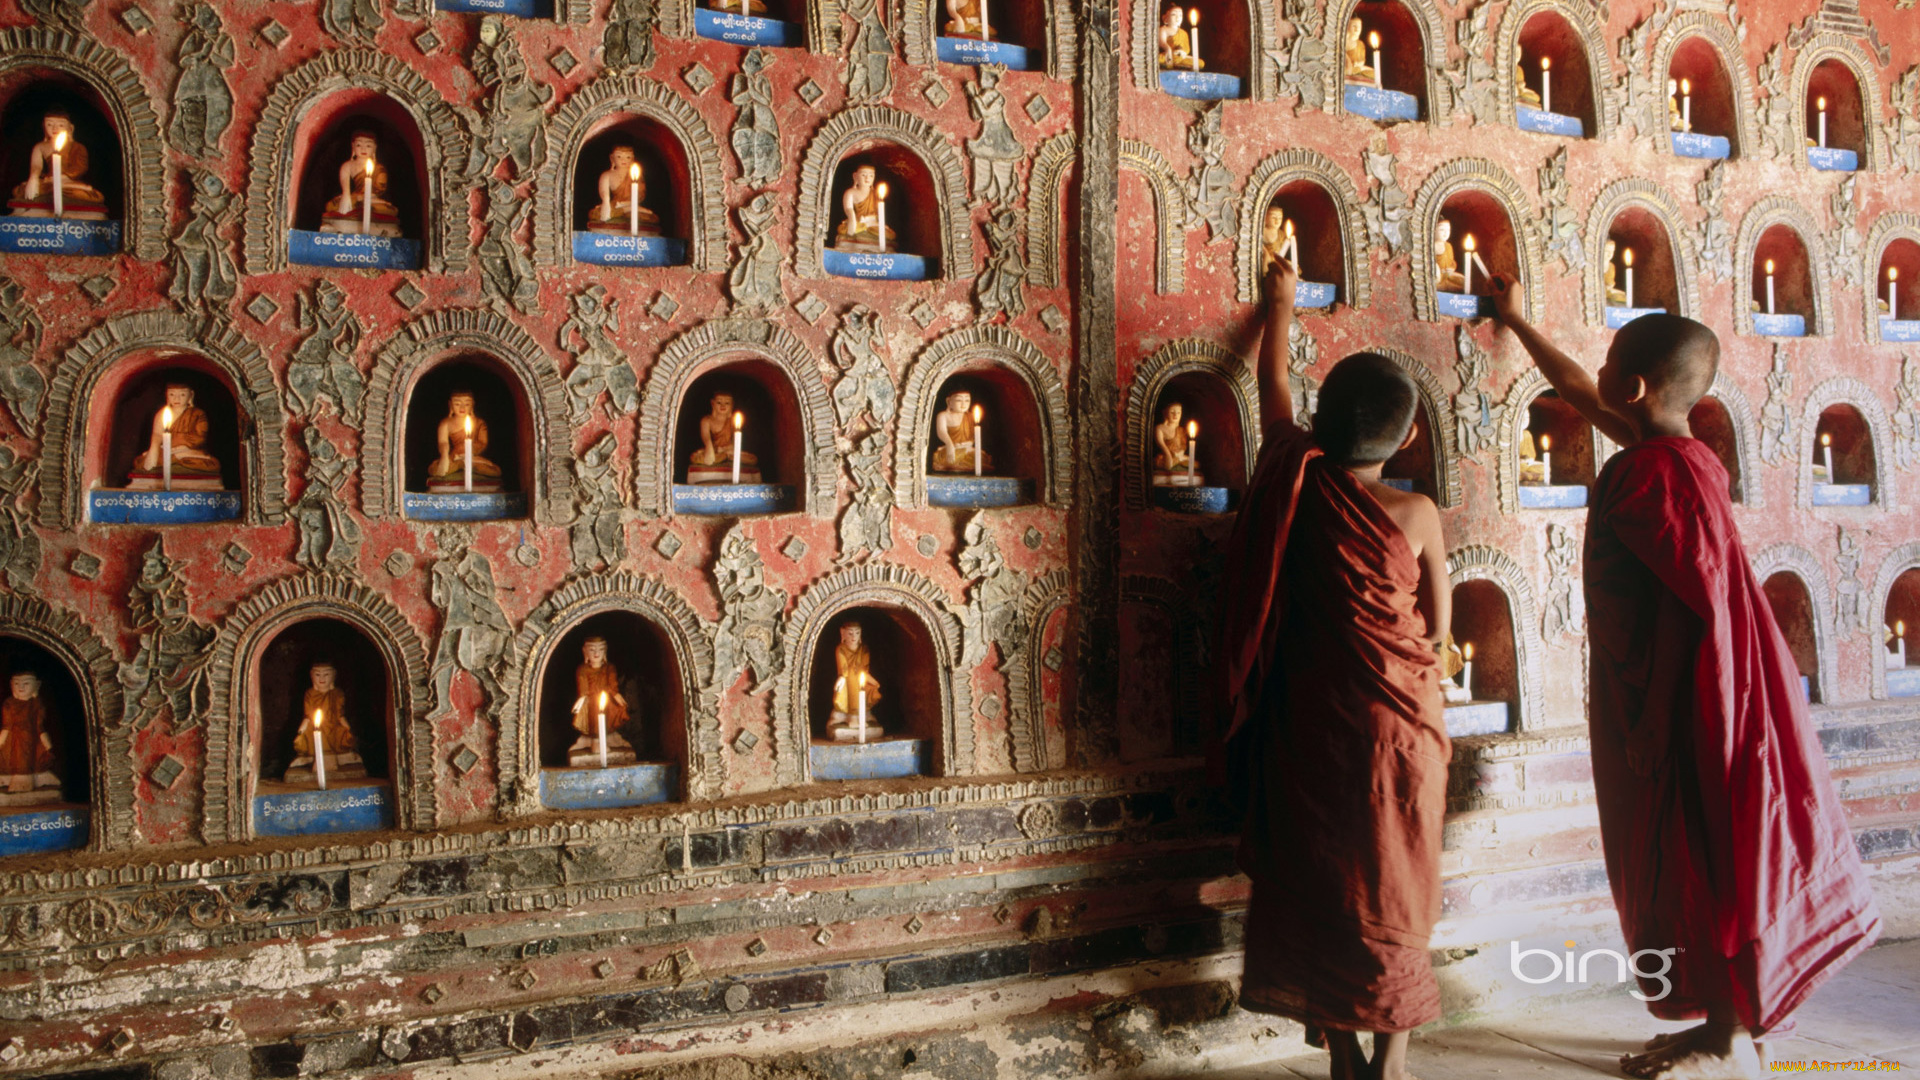 разное, религия, статуэтки, свечи, тибет, стена, дети, монахи